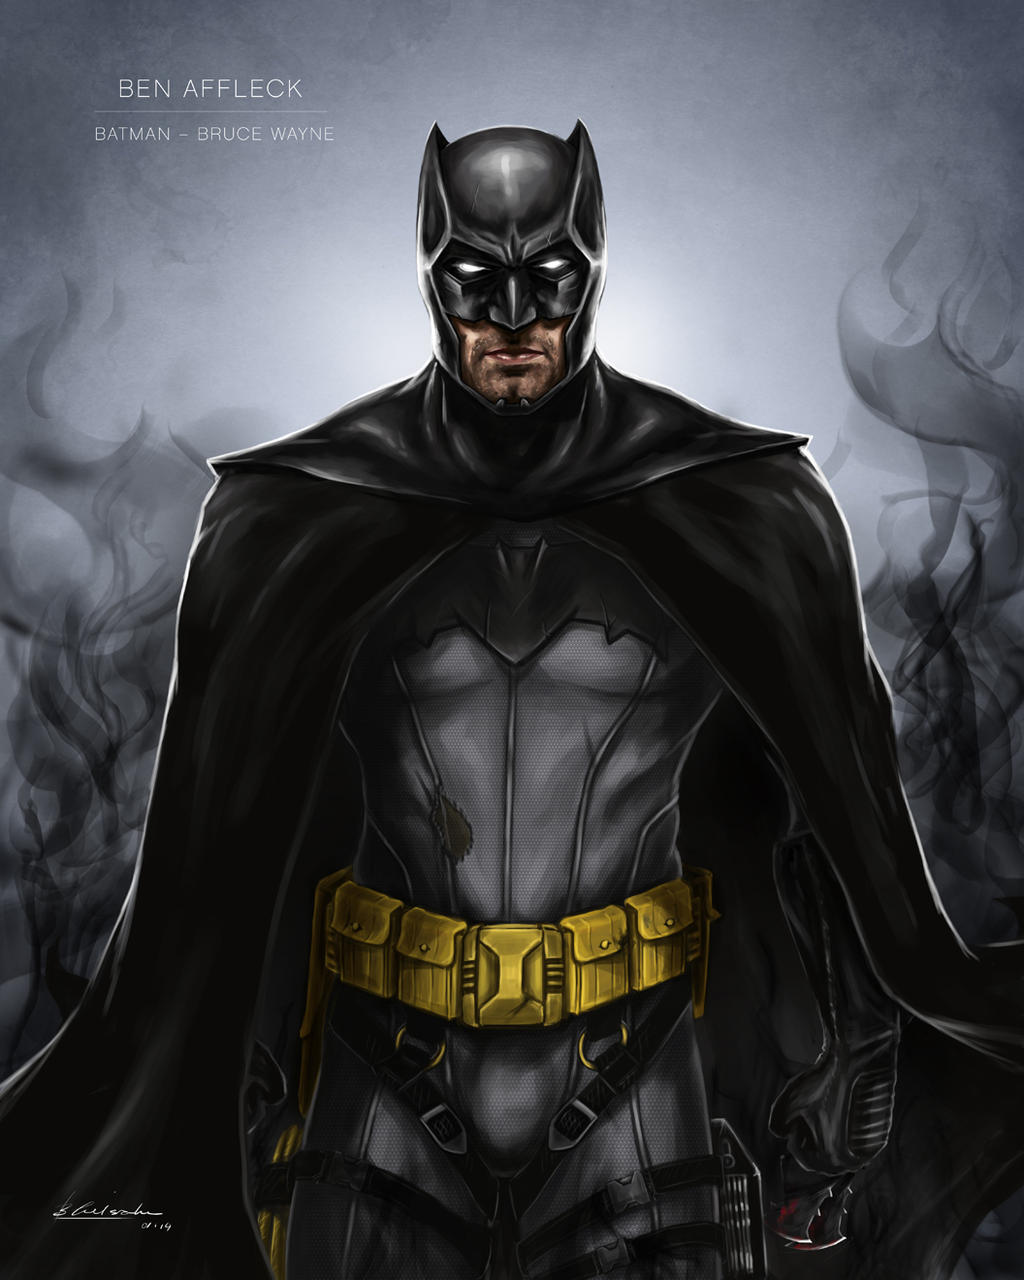 Ben Affleck Batman concept by Ben-Wilsonham on DeviantArt